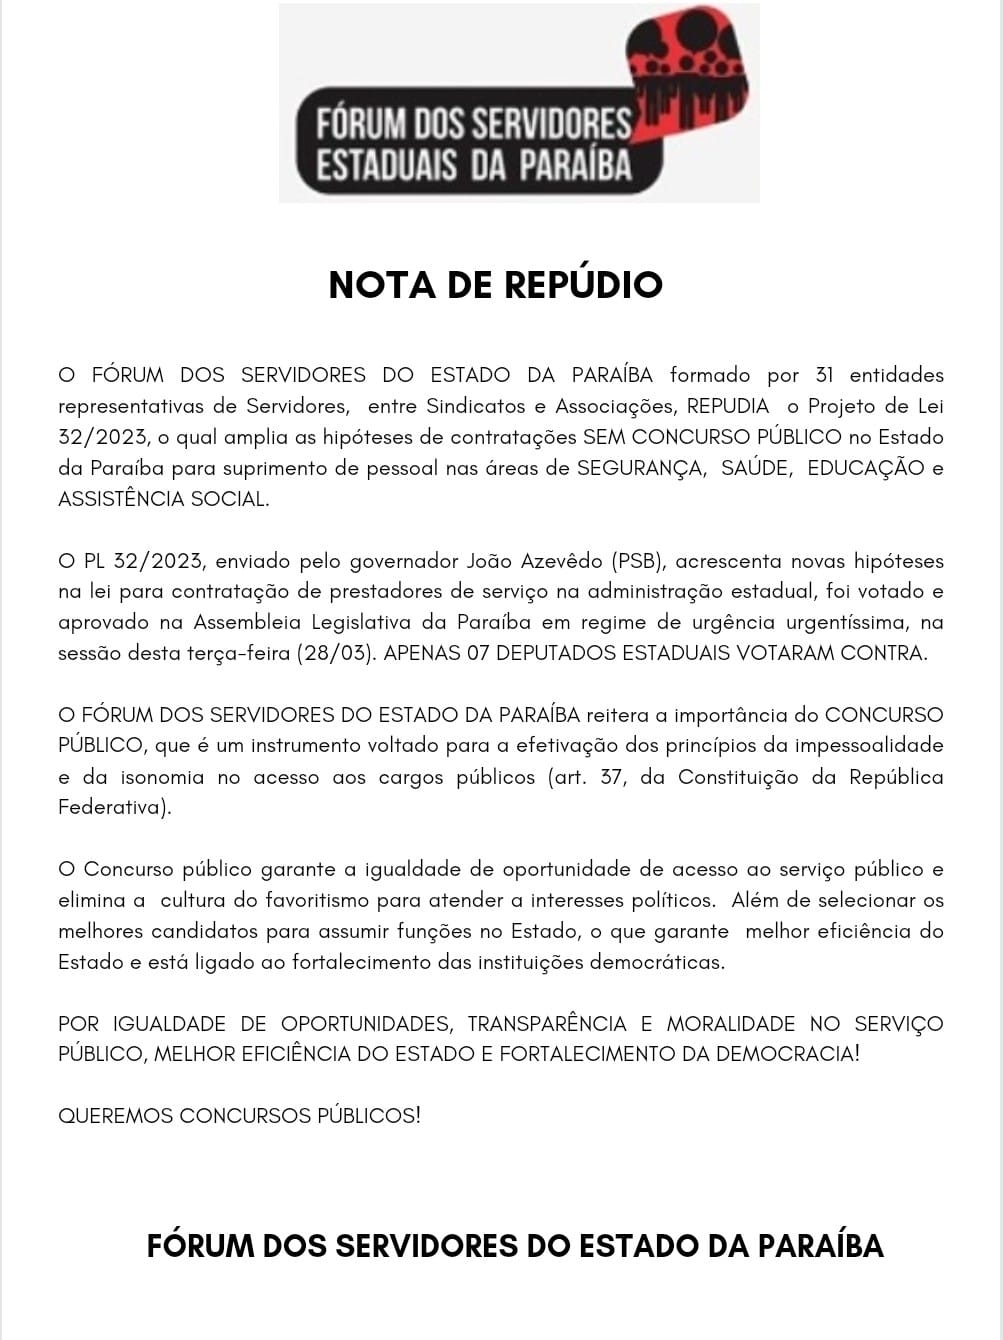 Fórum de Servidores da Paraíba publica nota de repúdio nesta quarta-feira